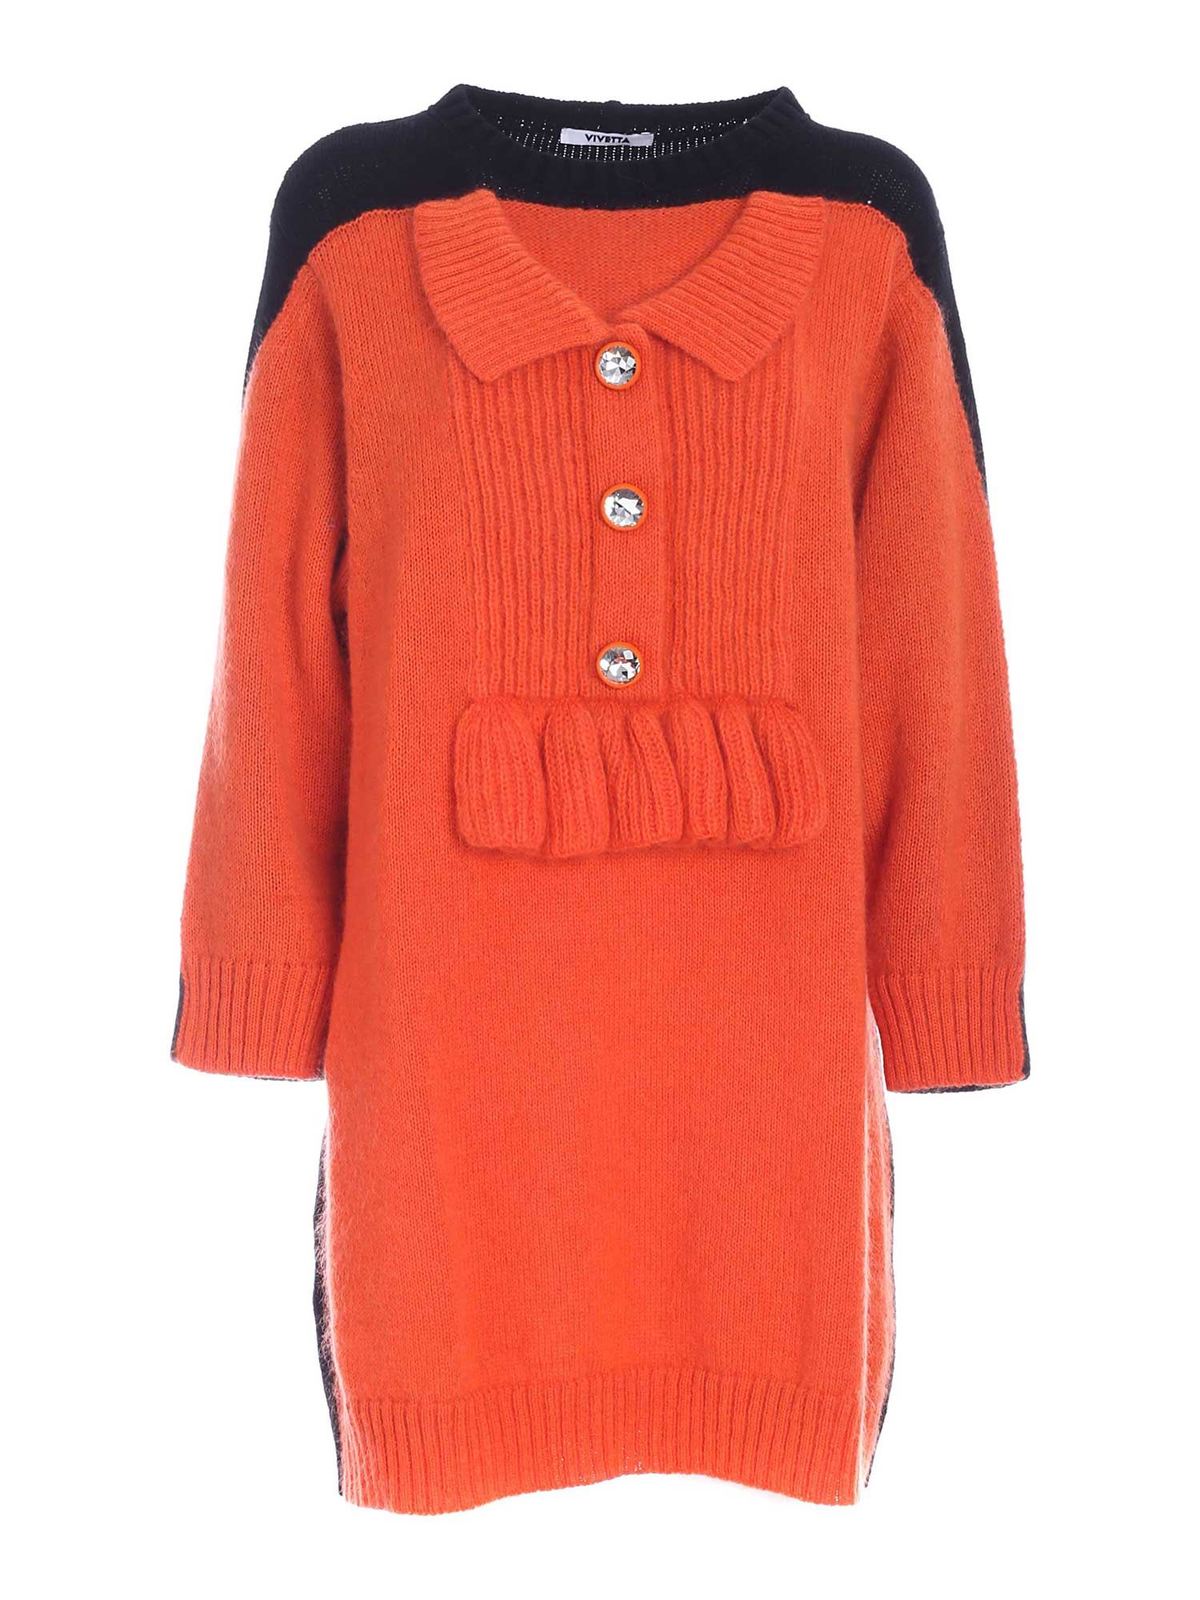 Vivetta Knit Dress In Orange And Black In Naranja